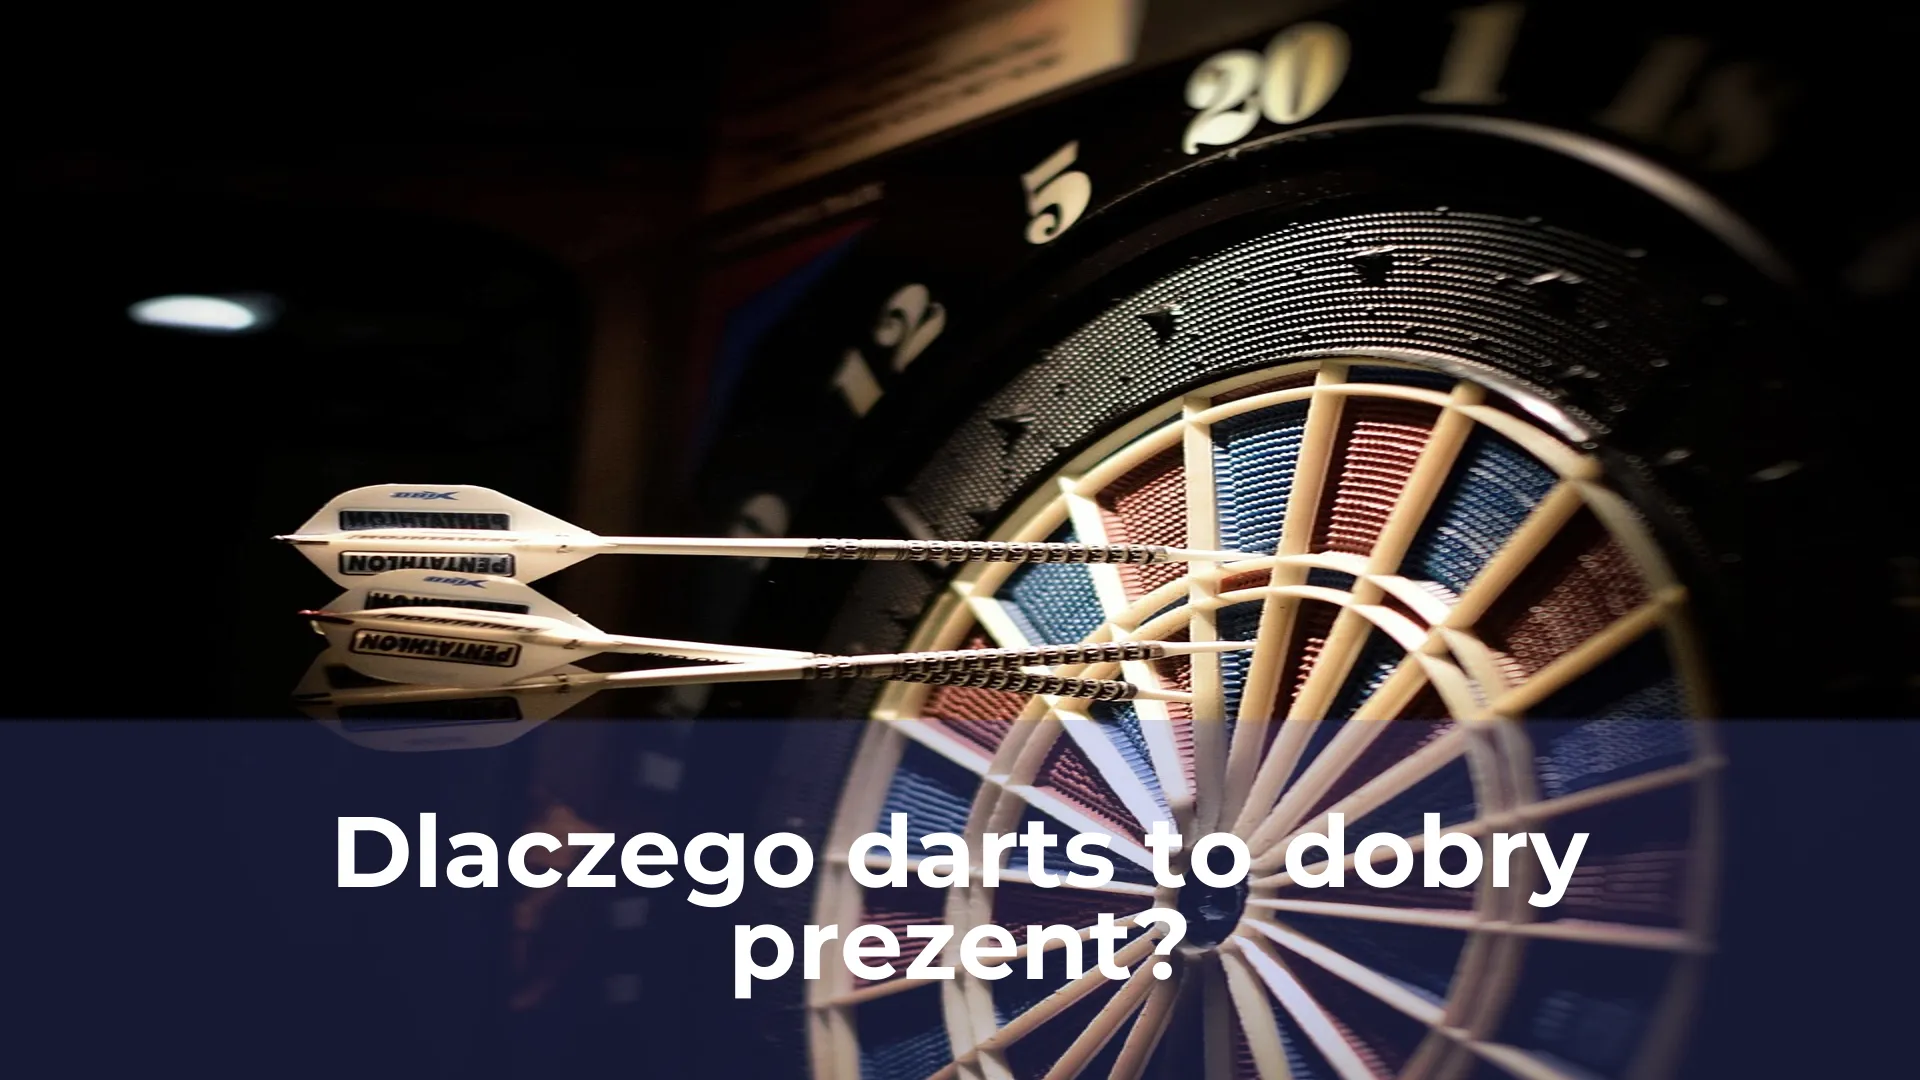 Dlaczego darts to dobry prezent